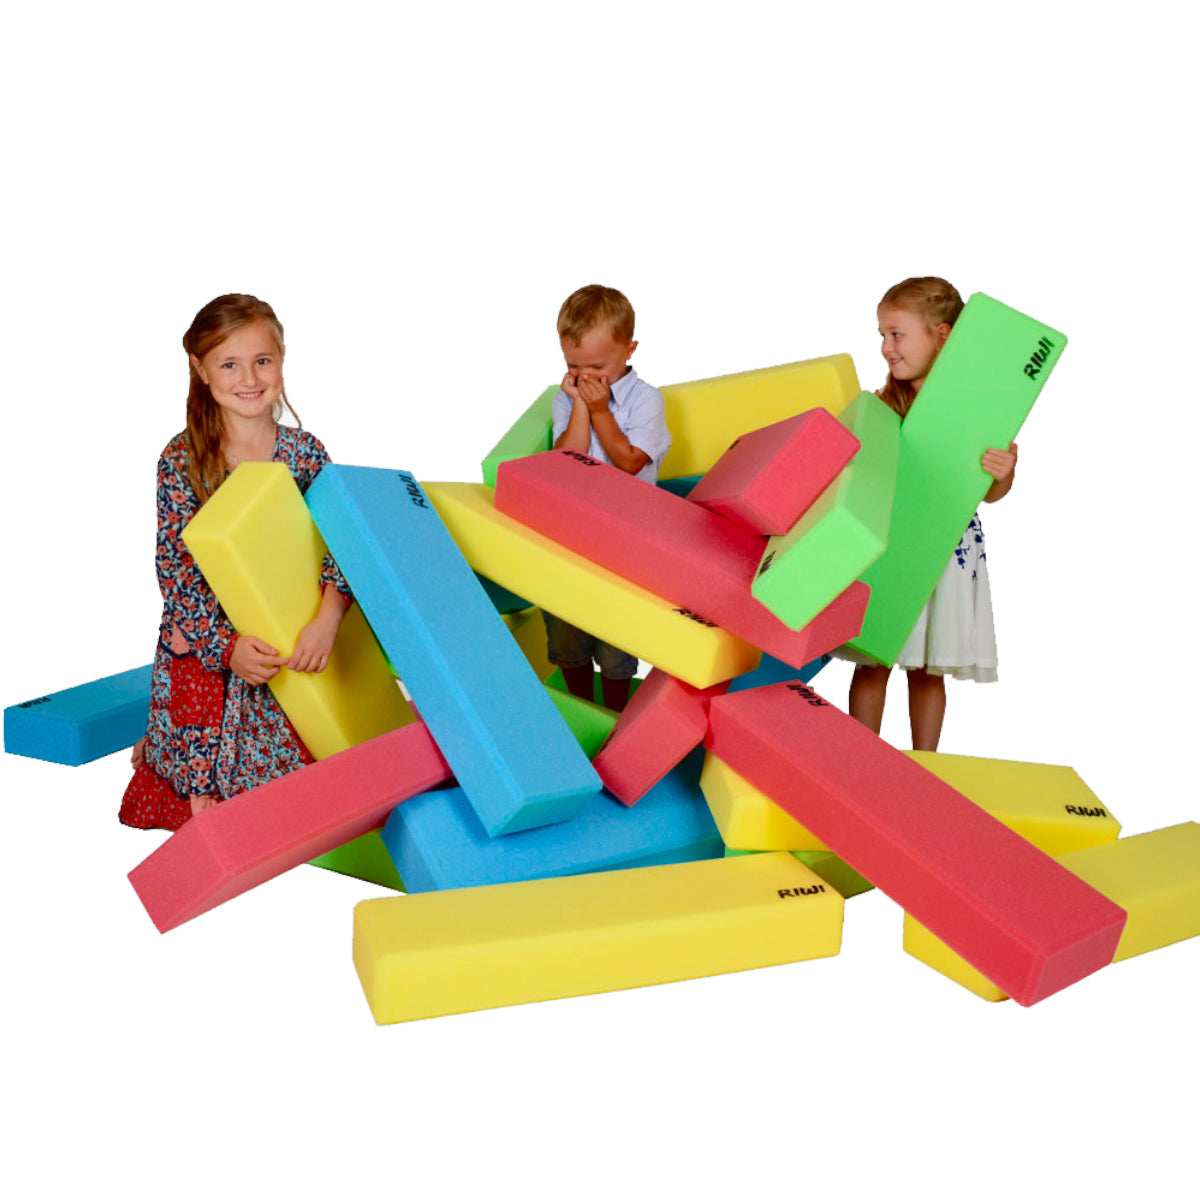 Calmies Eco-Friendly Rubber Toy Blocks - RubbeeBlocks – Calmies, LLC